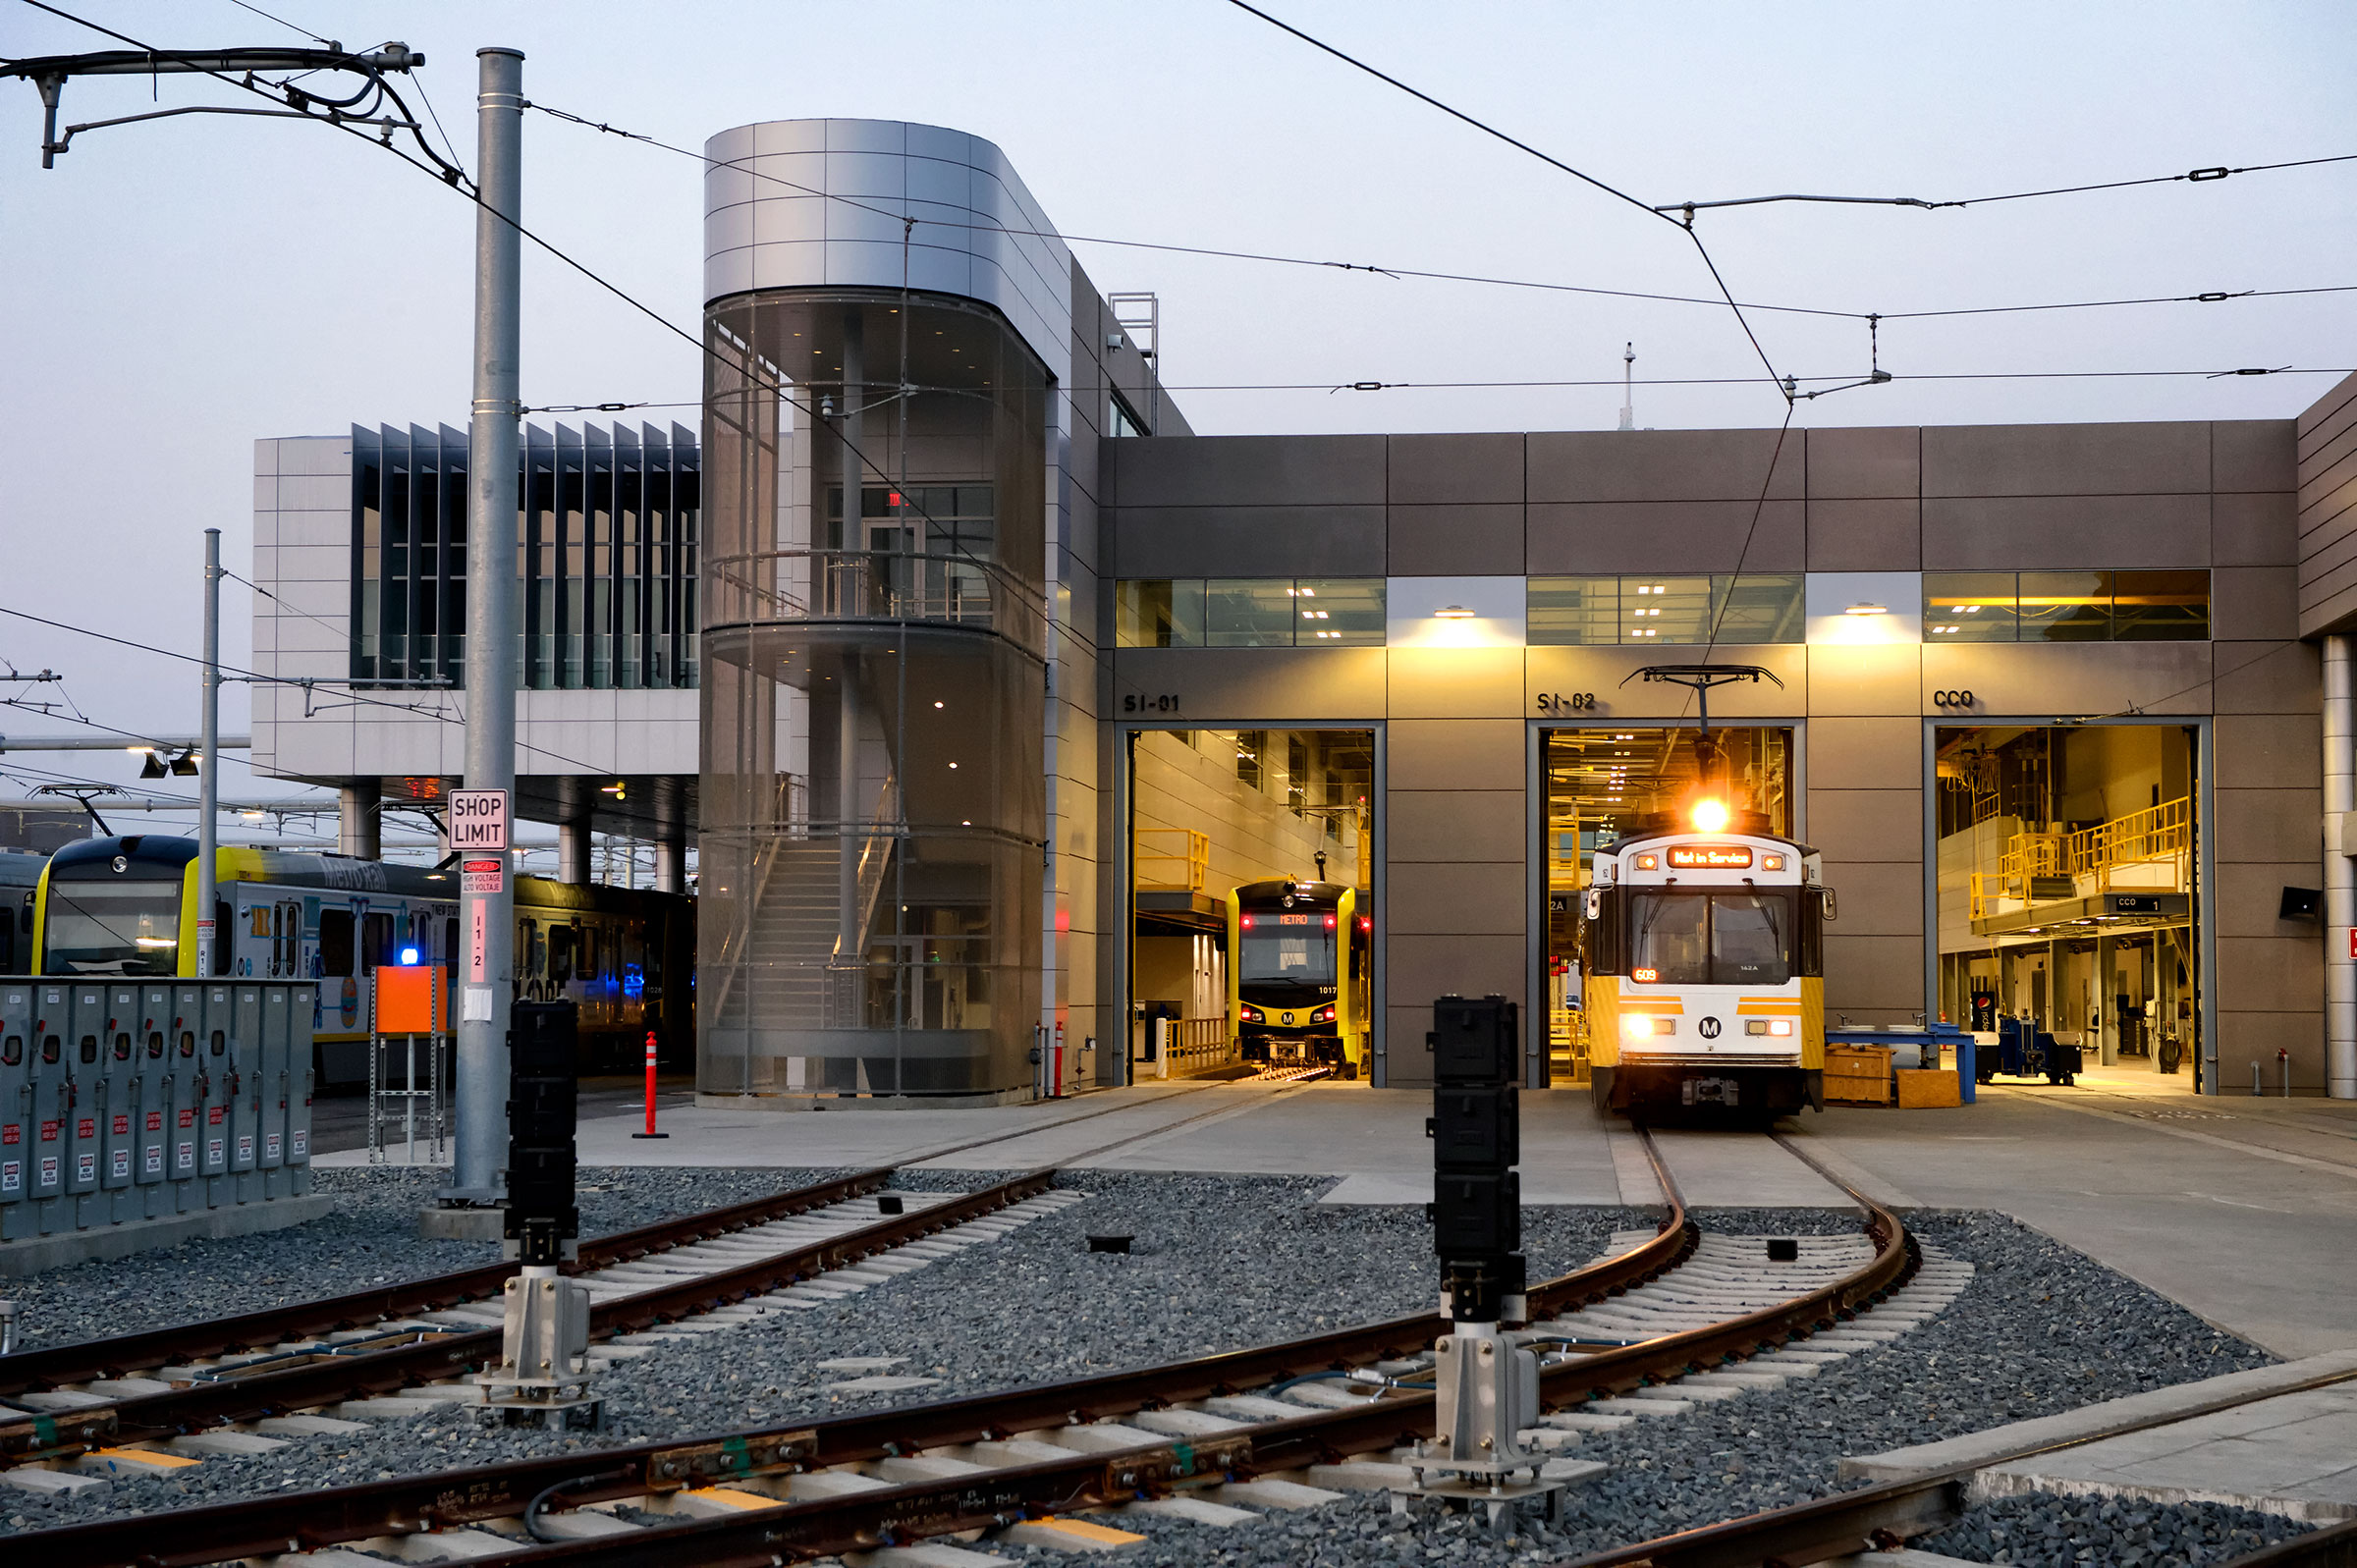 Metro Expo Light Rail Operations & Maintenance Facility (OMF)